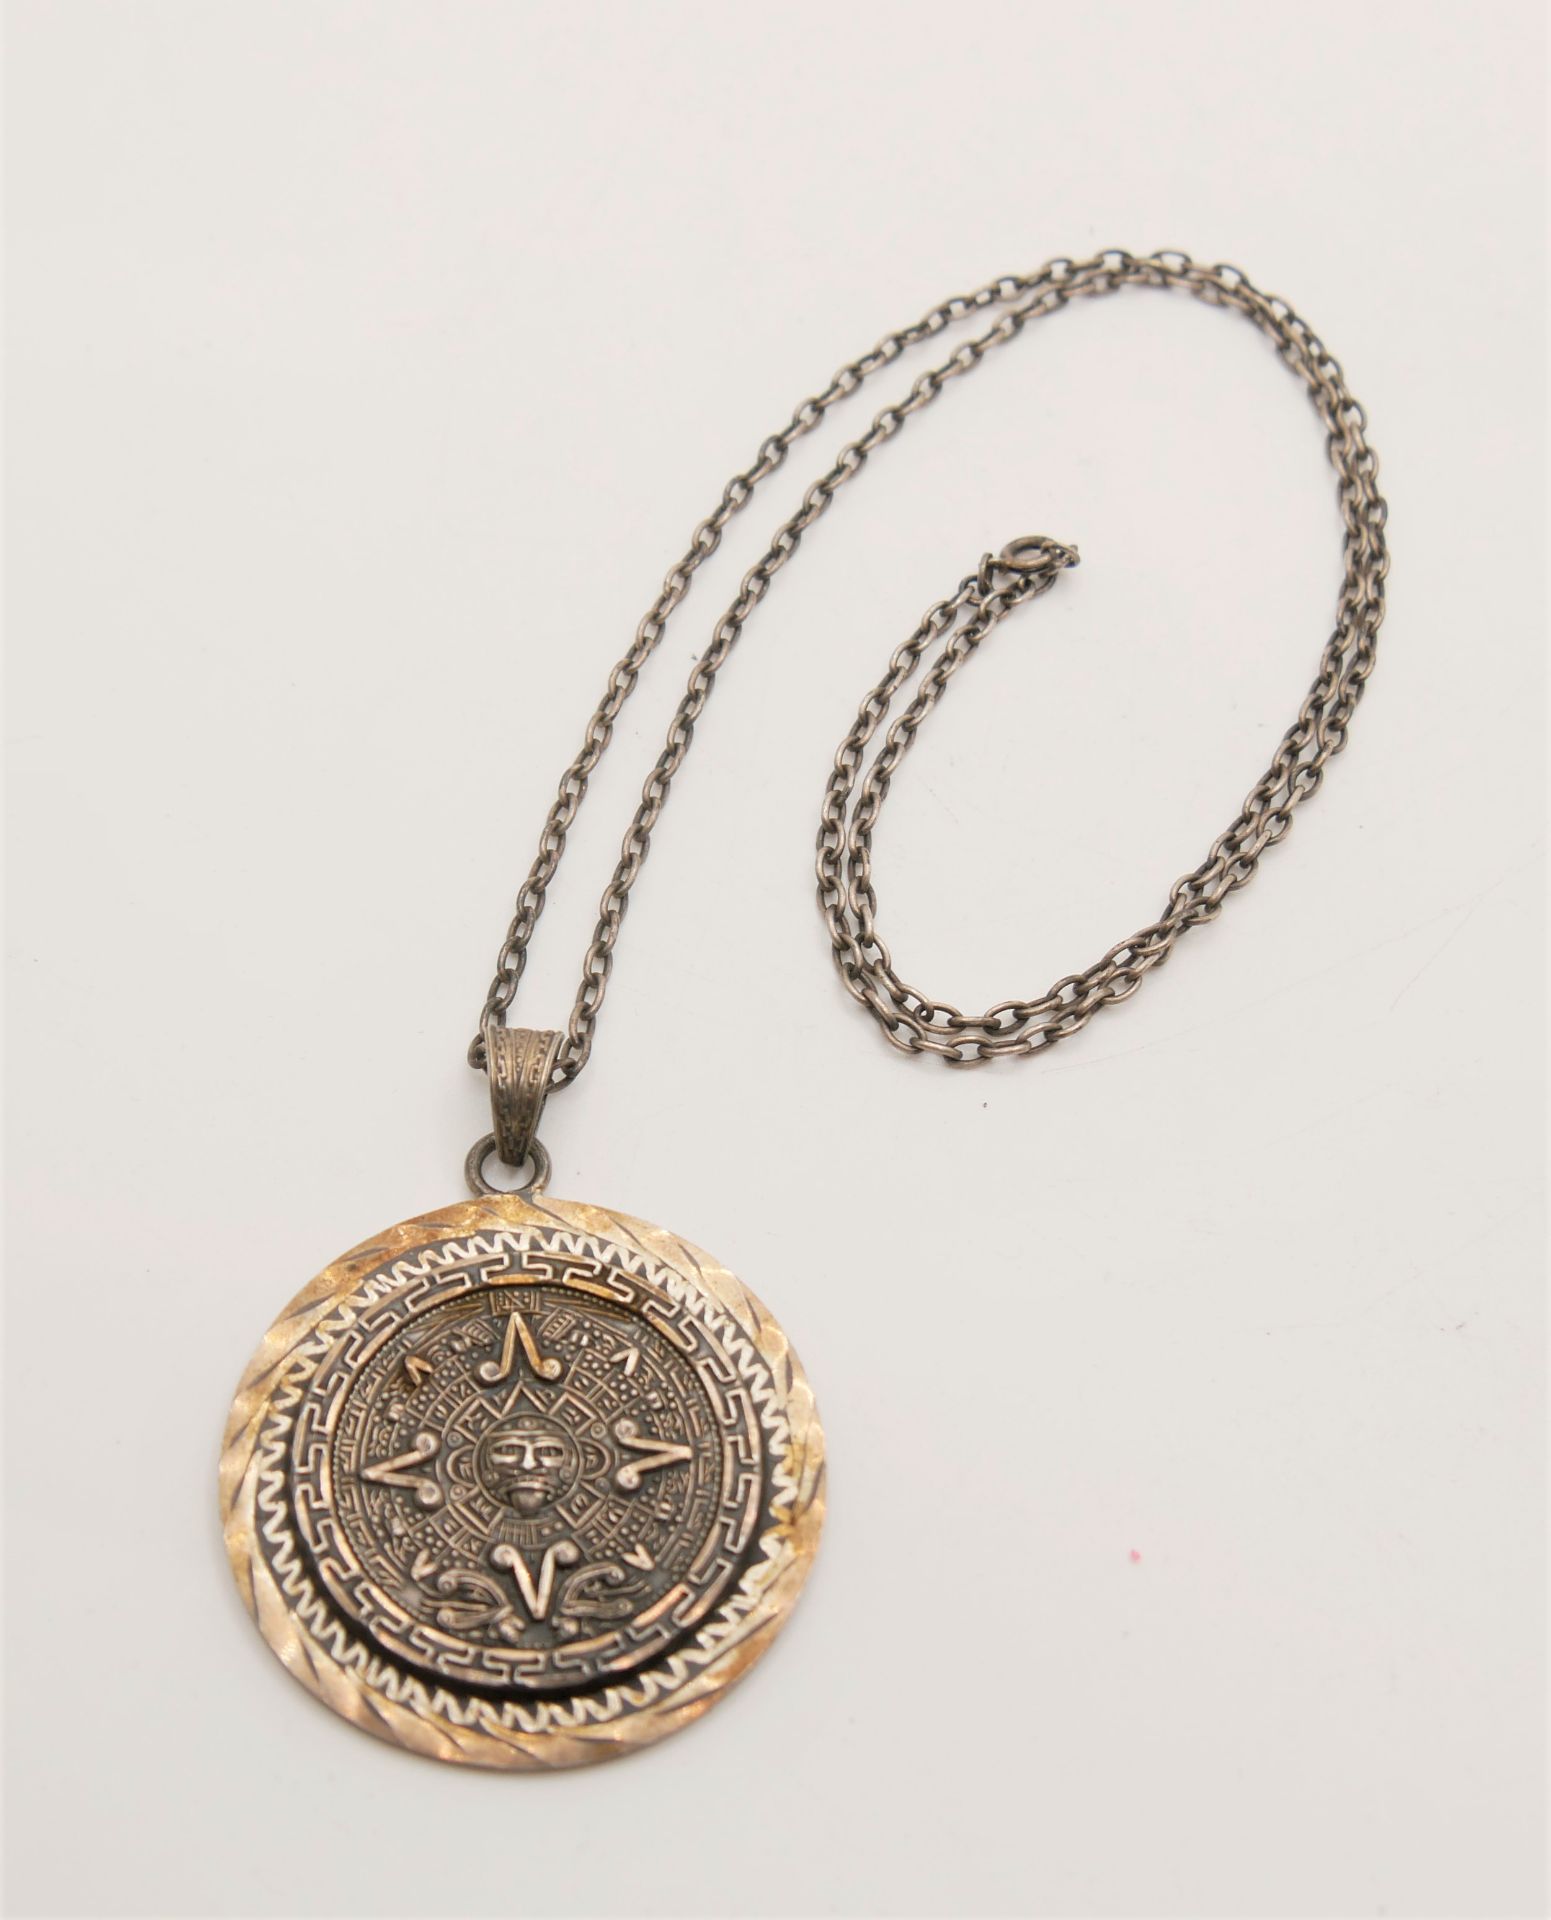 925er Silber Kette mit eingefasster Medaille. Länge ca. 60 cm. Bitte besichtigen